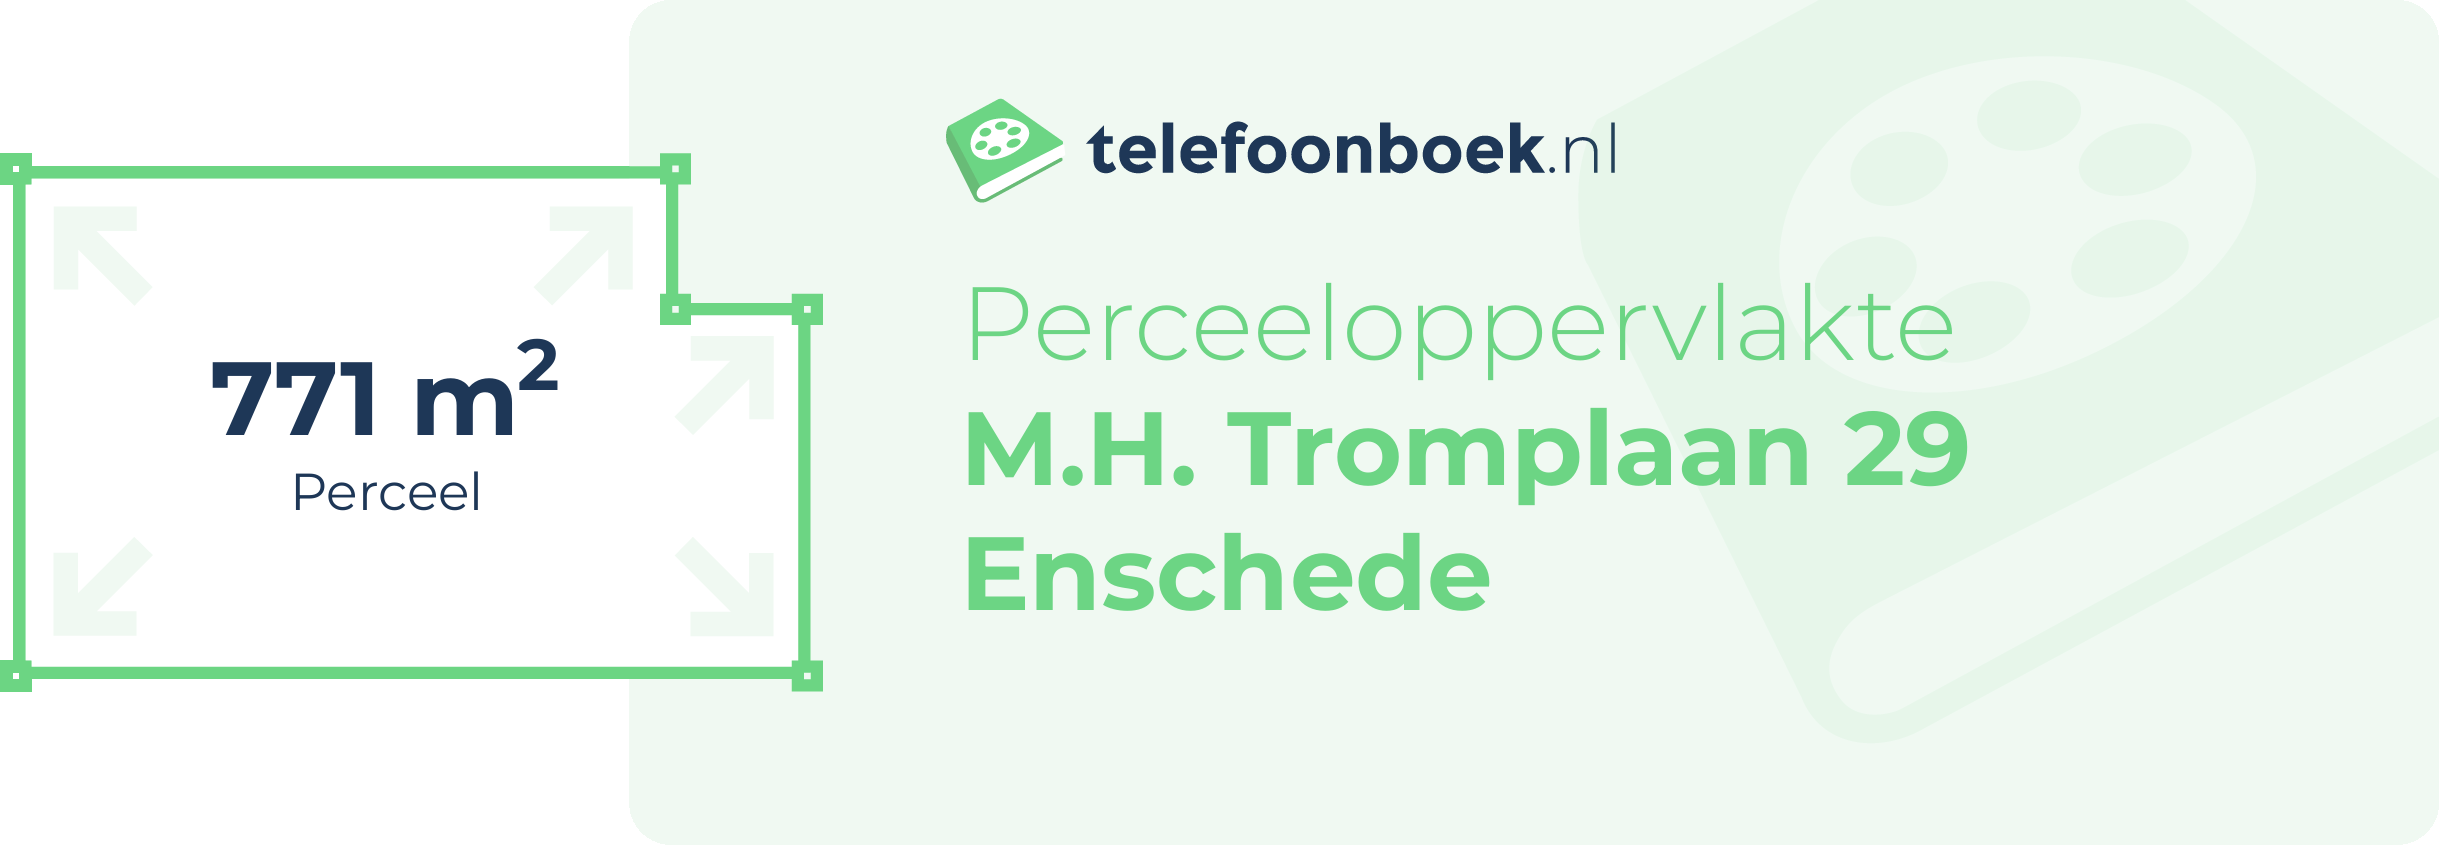 Perceeloppervlakte M.H. Tromplaan 29 Enschede